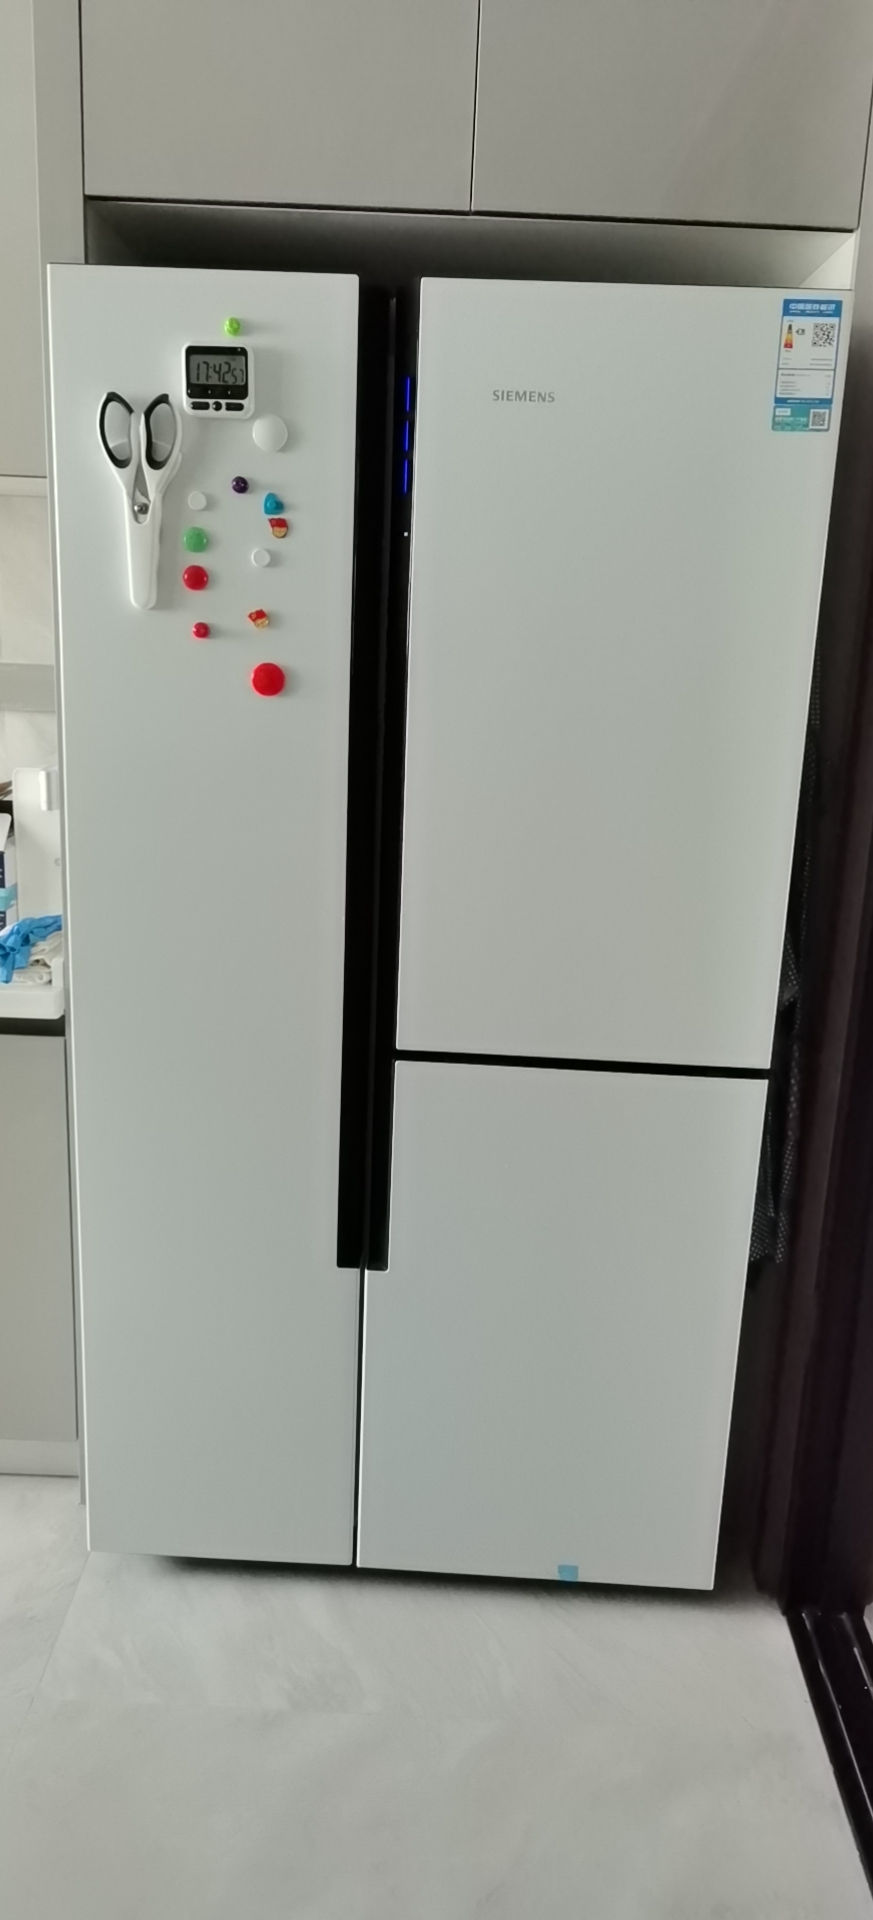 换了三台冰箱后来说说，为什么冰箱要用十字对开门，而不选对开门